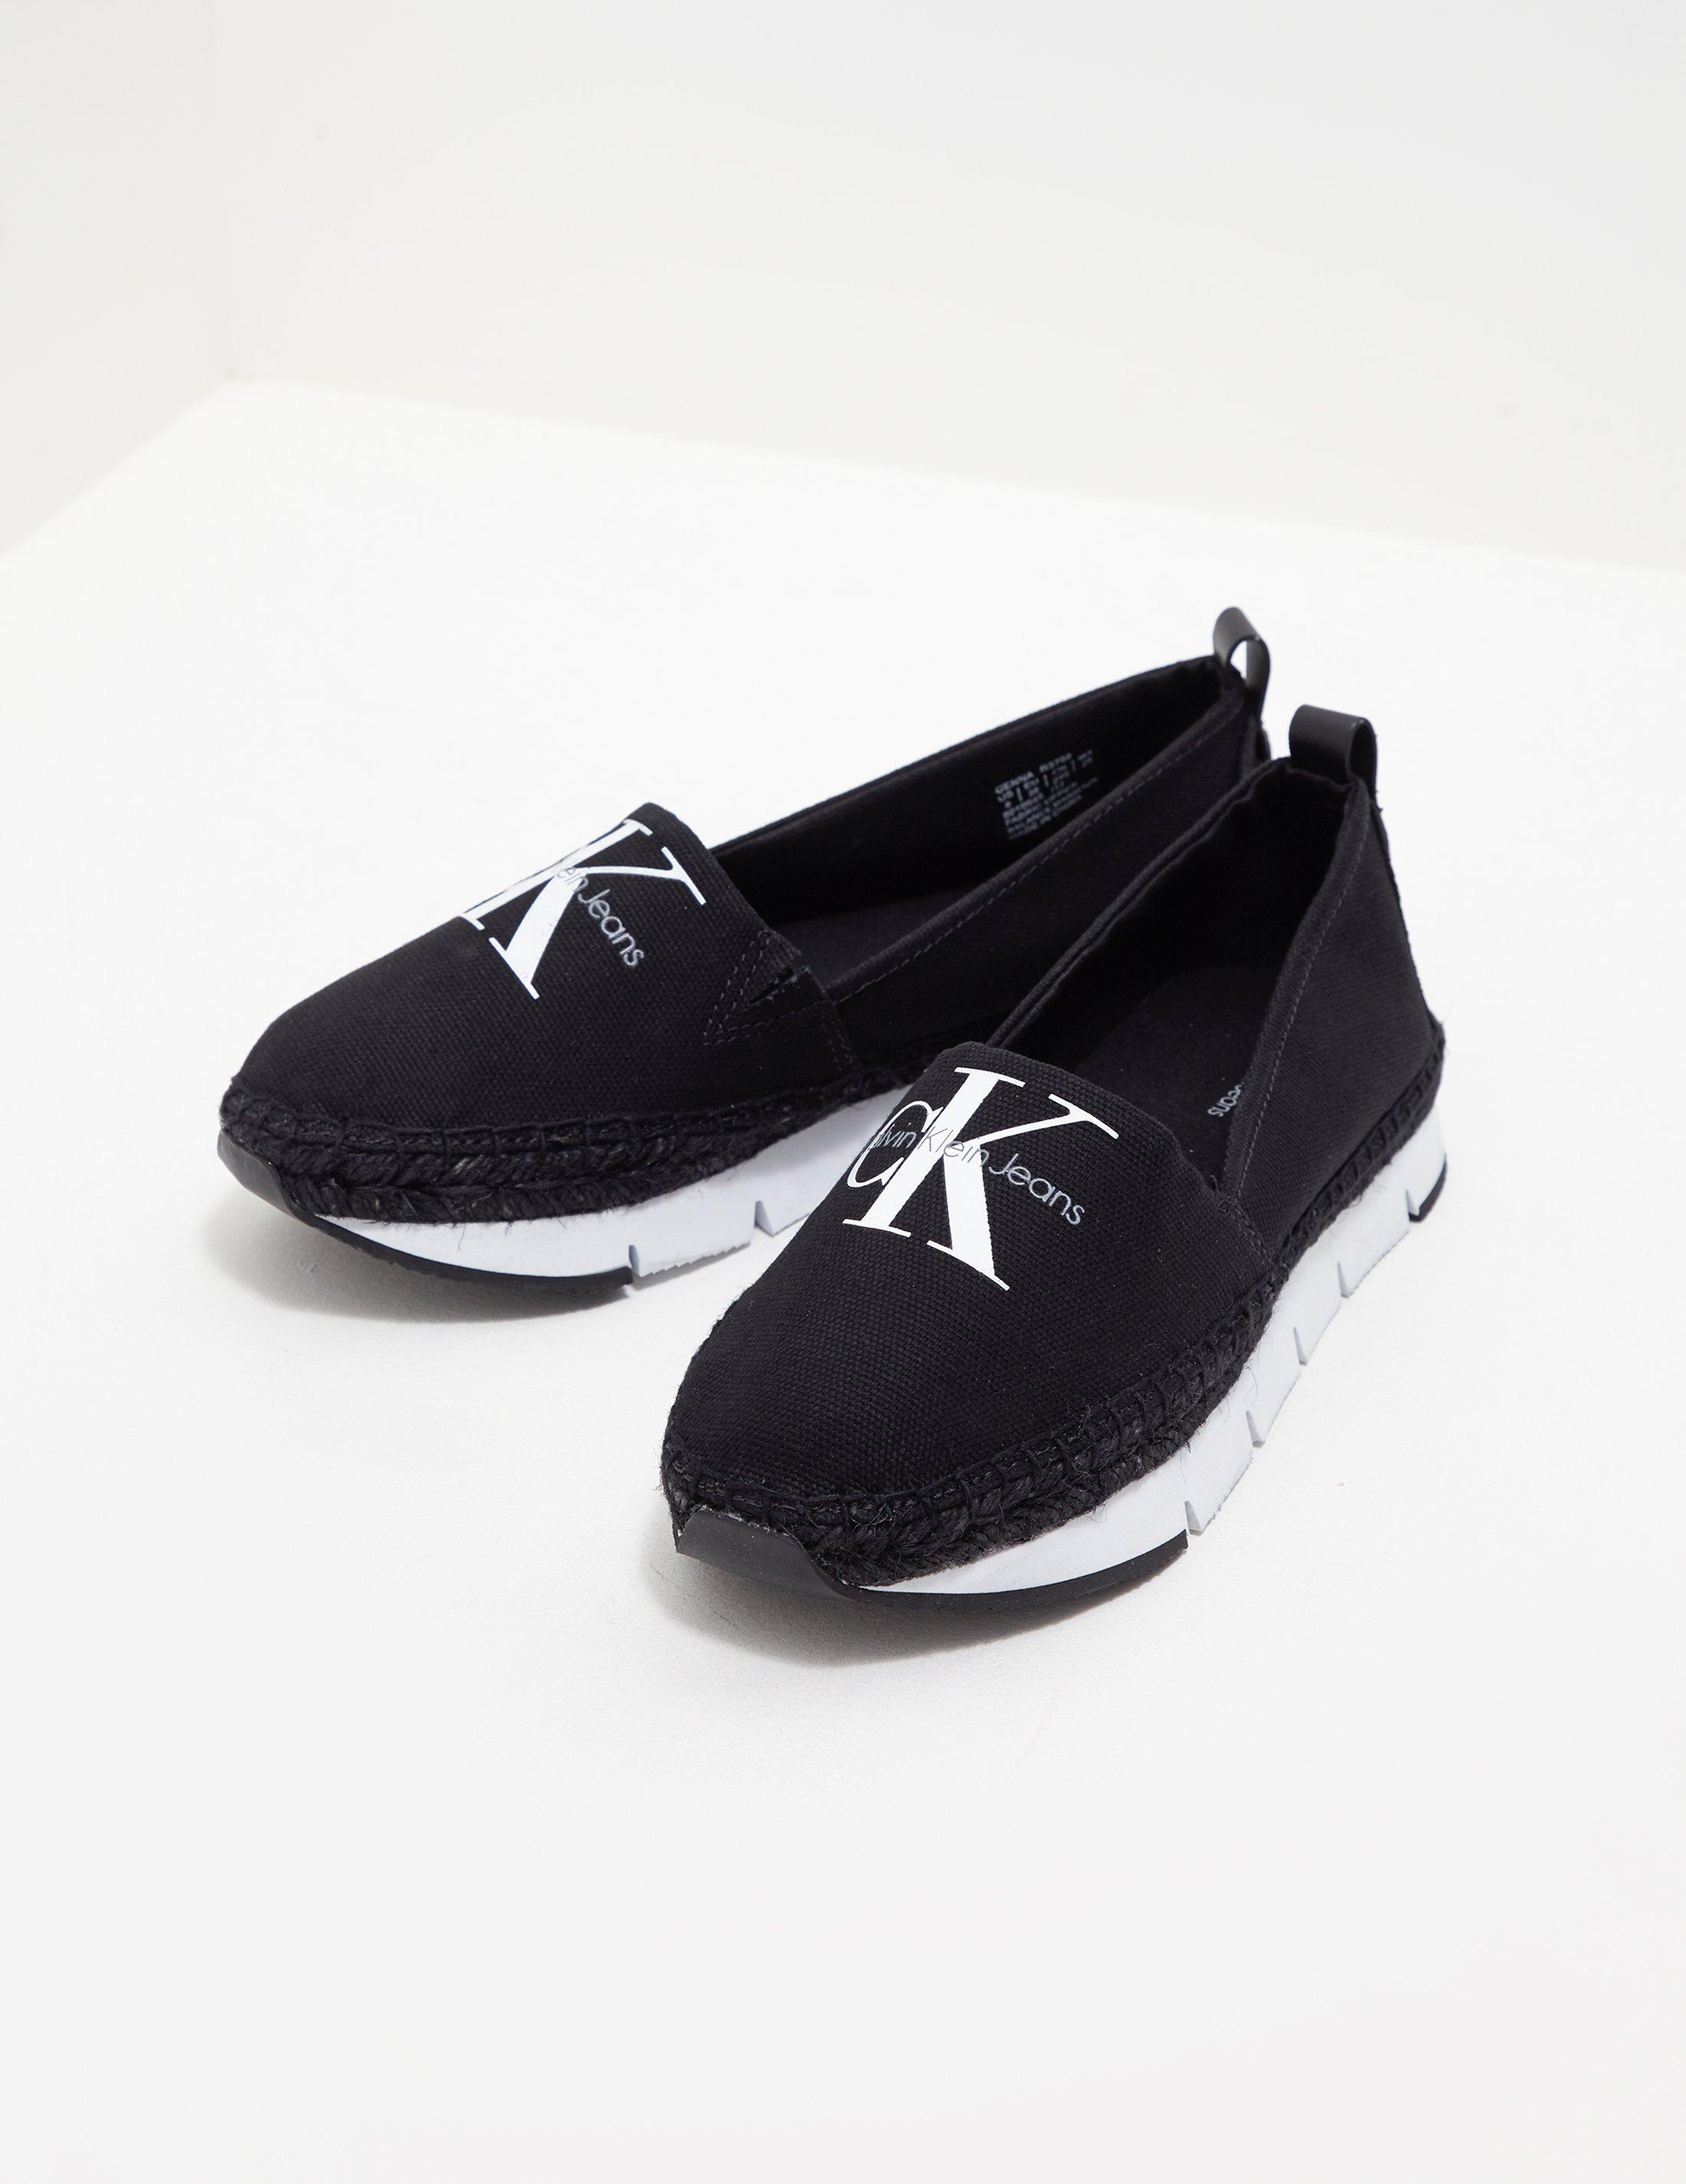 Calvin Klein Genna Canvas Espadrille Shoes Deals, SAVE 55% -  raptorunderlayment.com